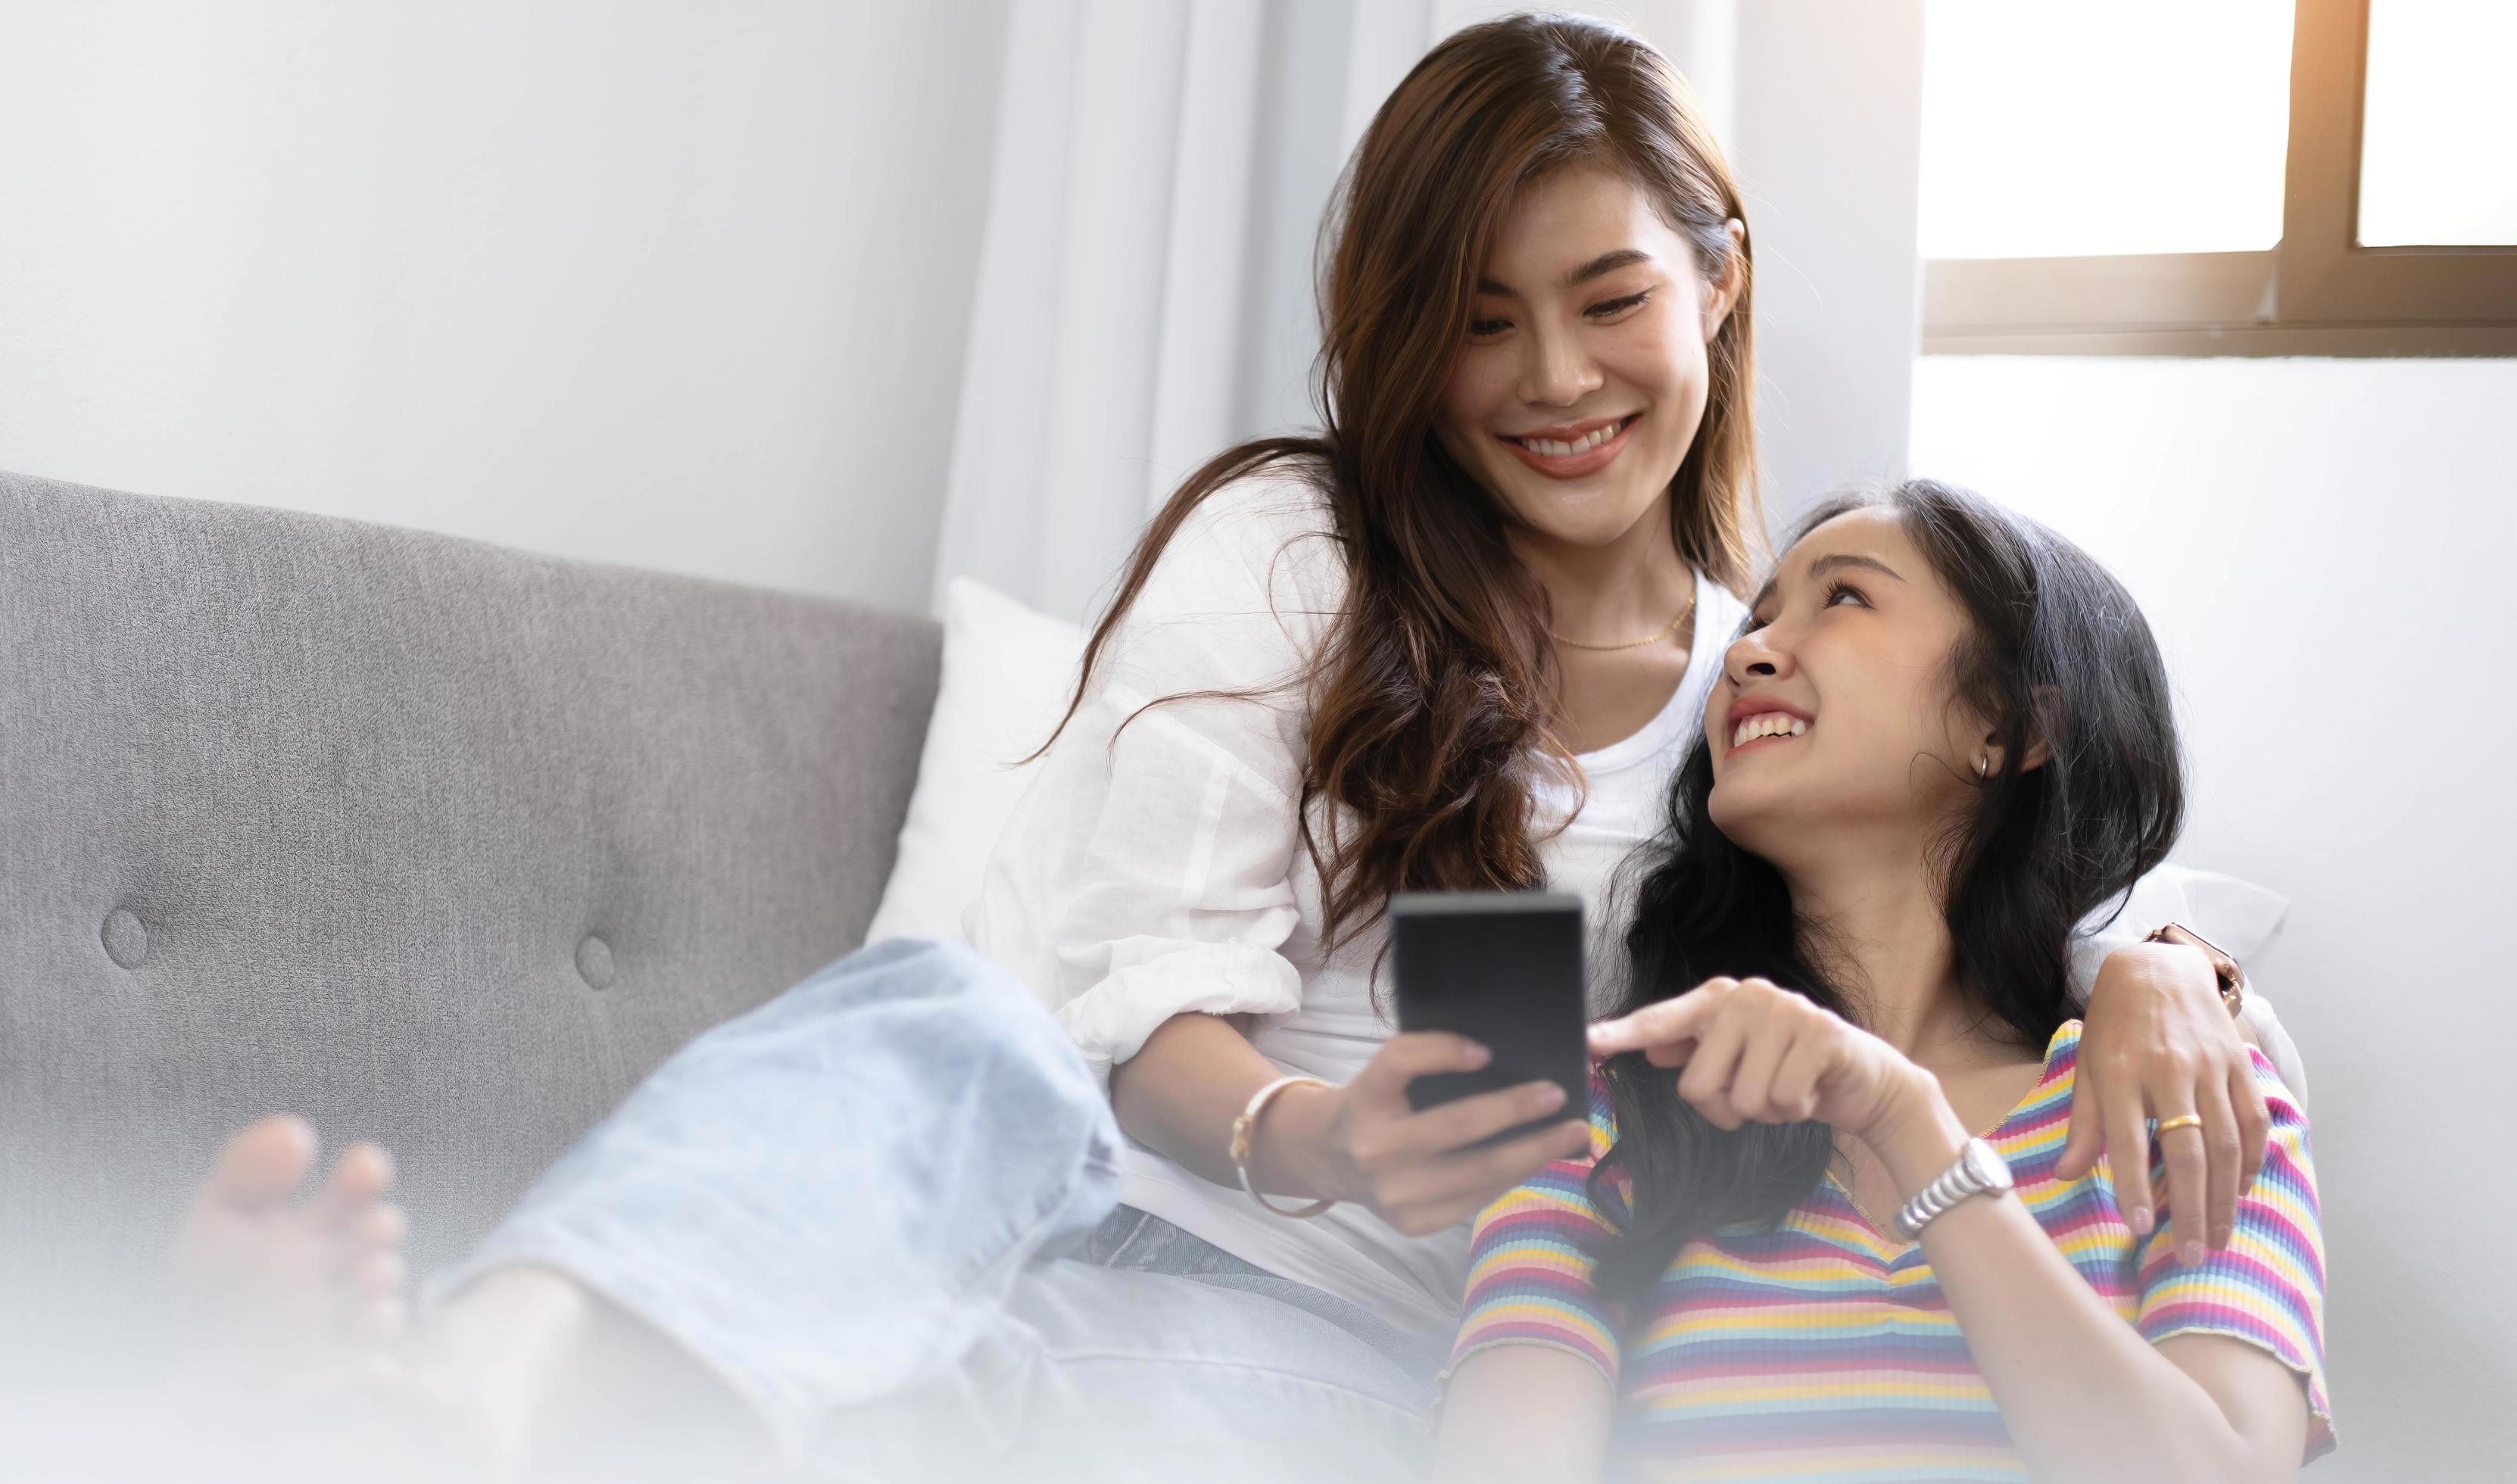 jonge mooie Aziatische vrouwen lesbisch koppel minnaar met behulp van smartphone video-oproep online in de woonkamer op de bank thuis met lachende face.concept van lgbt seksualiteit met gelukkige levensstijl samen foto afbeelding